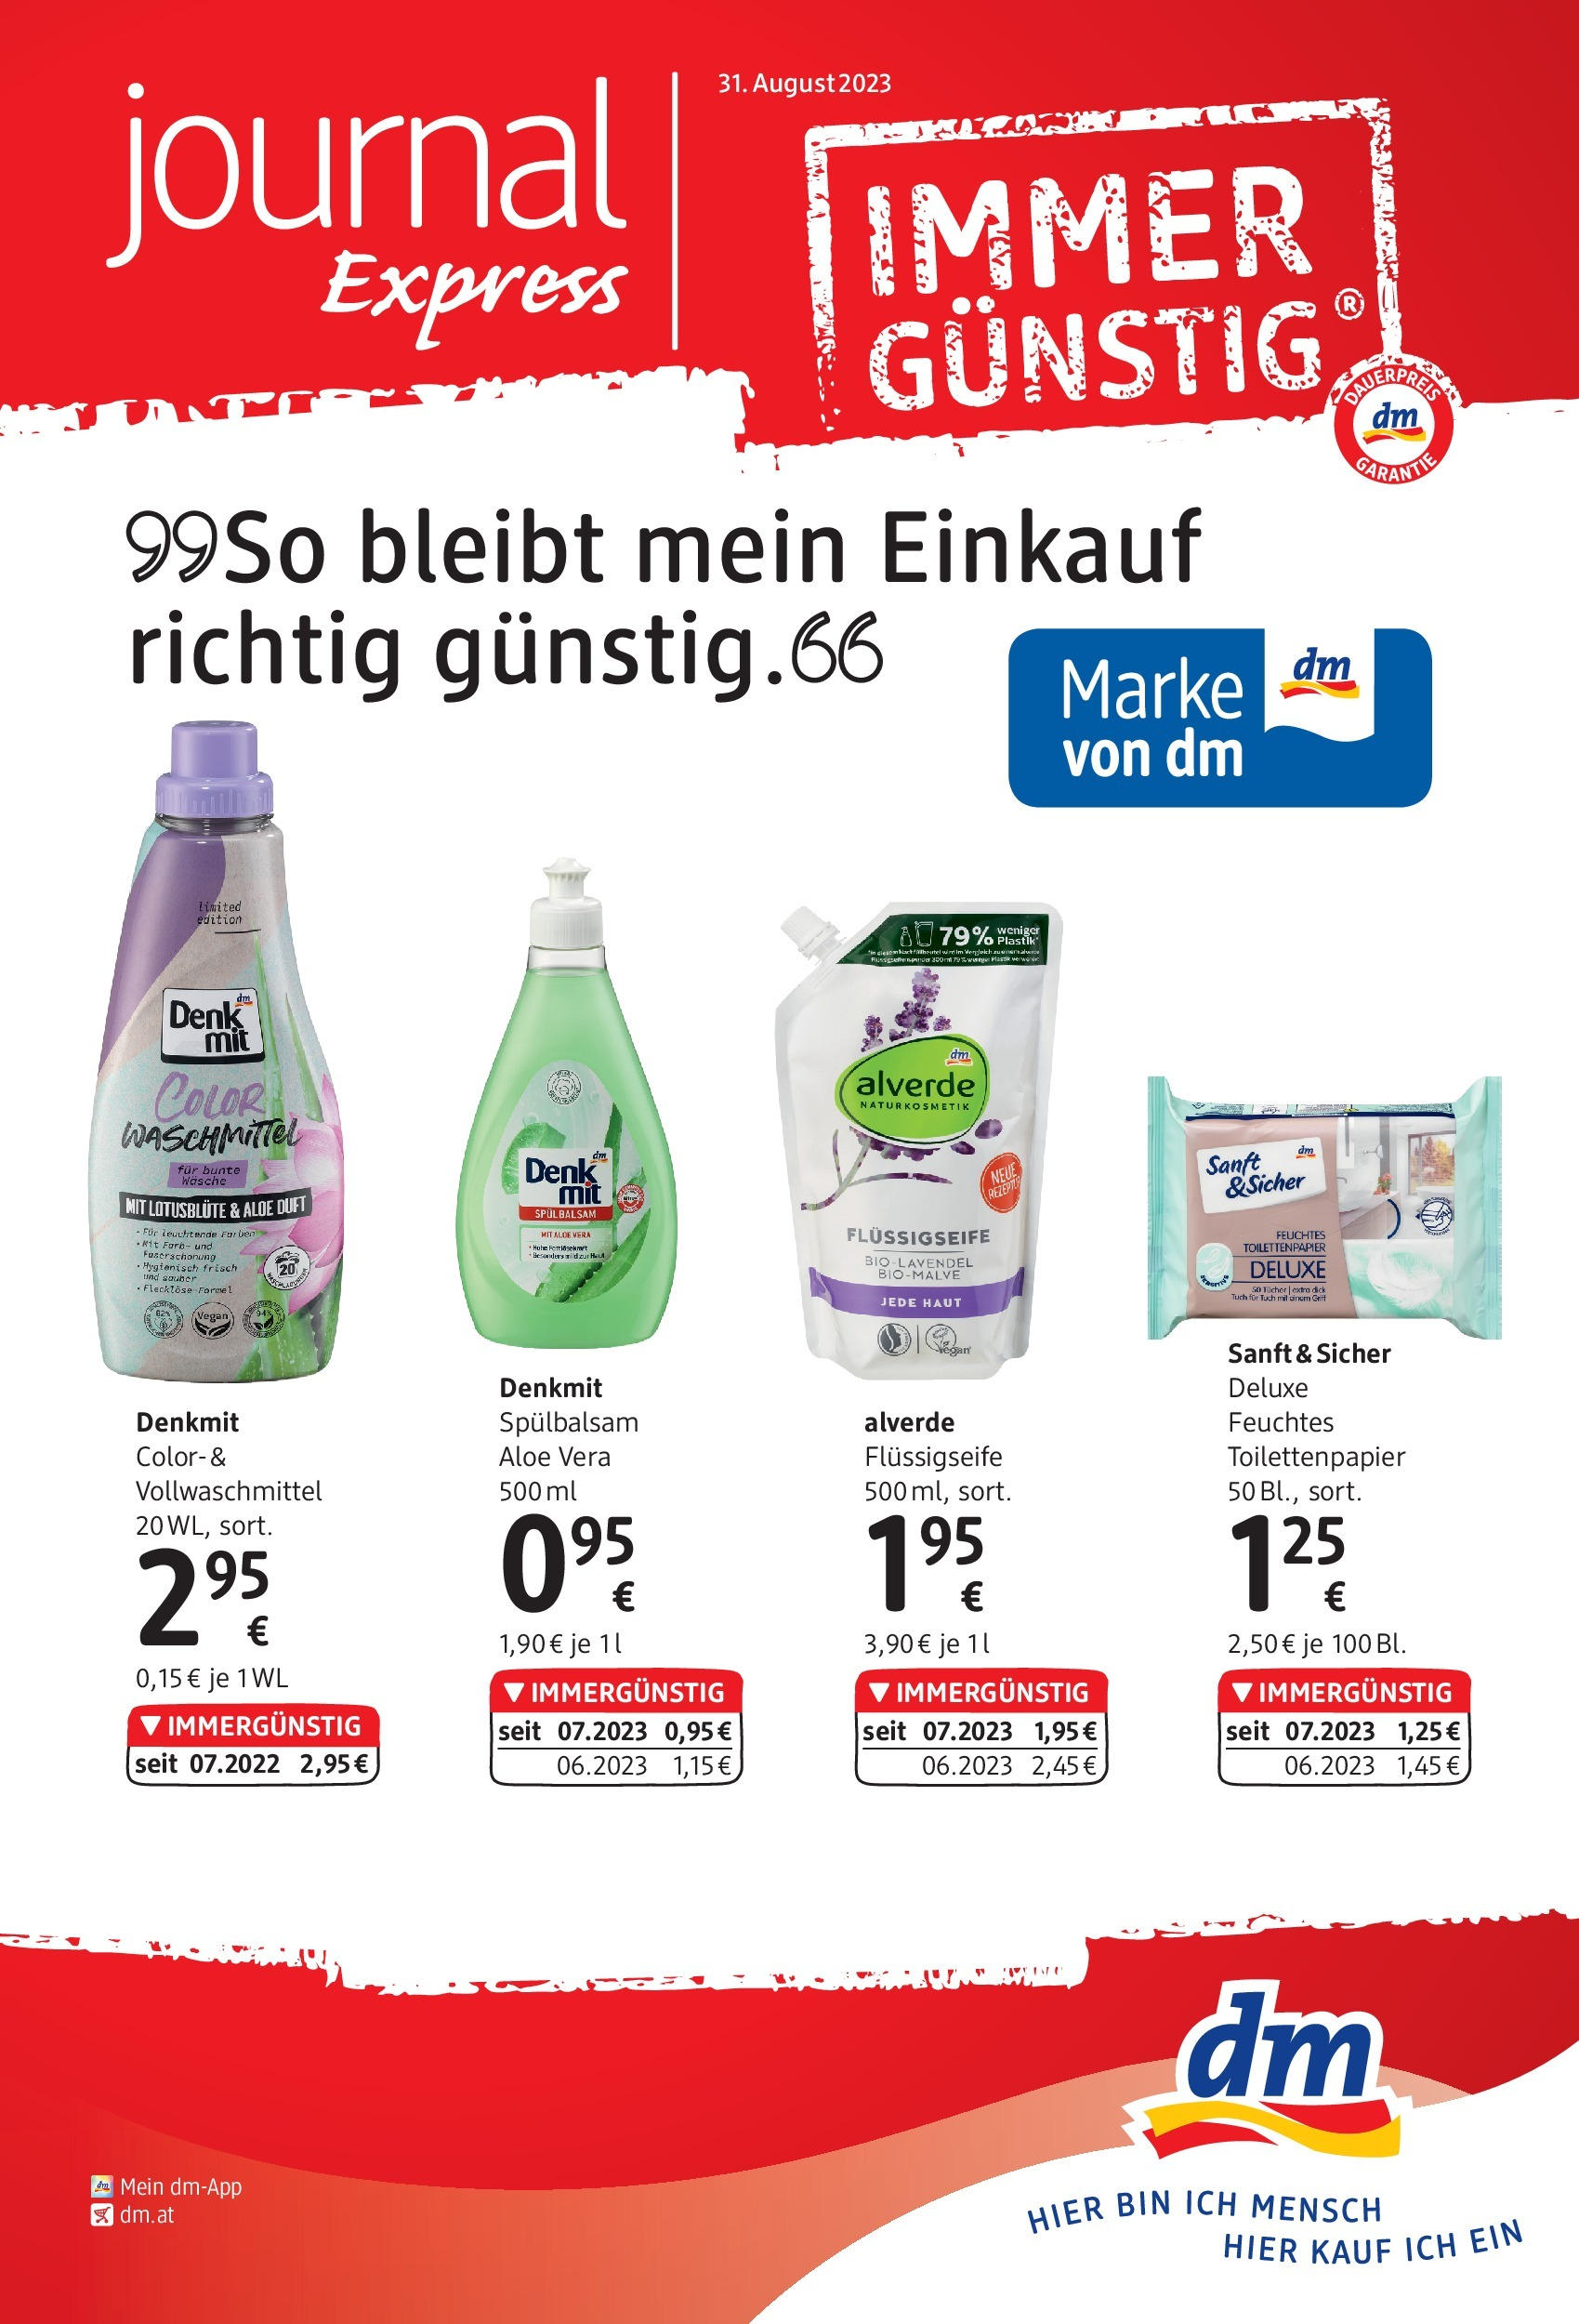 dm drogerie markt Flugblatt September 2023 von 31.08.2023 - Aktuelle Angebote | Seite: 1 | Produkte: Duft, Haut Make-up Entferner, Waschmittel